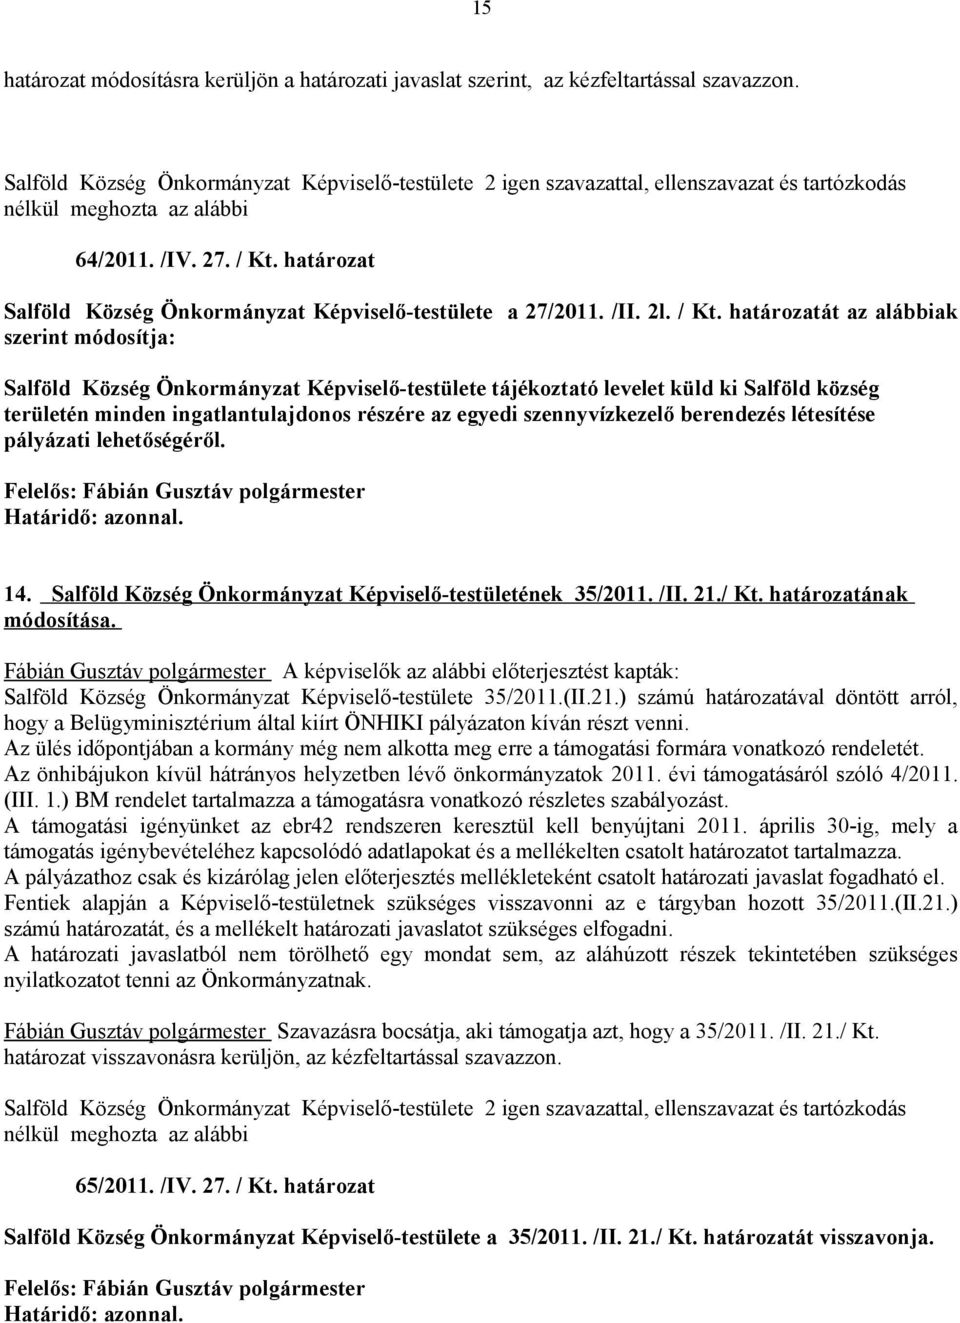 határozat Salföld Község Önkormányzat Képviselő-testülete a 27/2011. /II. 2l. / Kt.